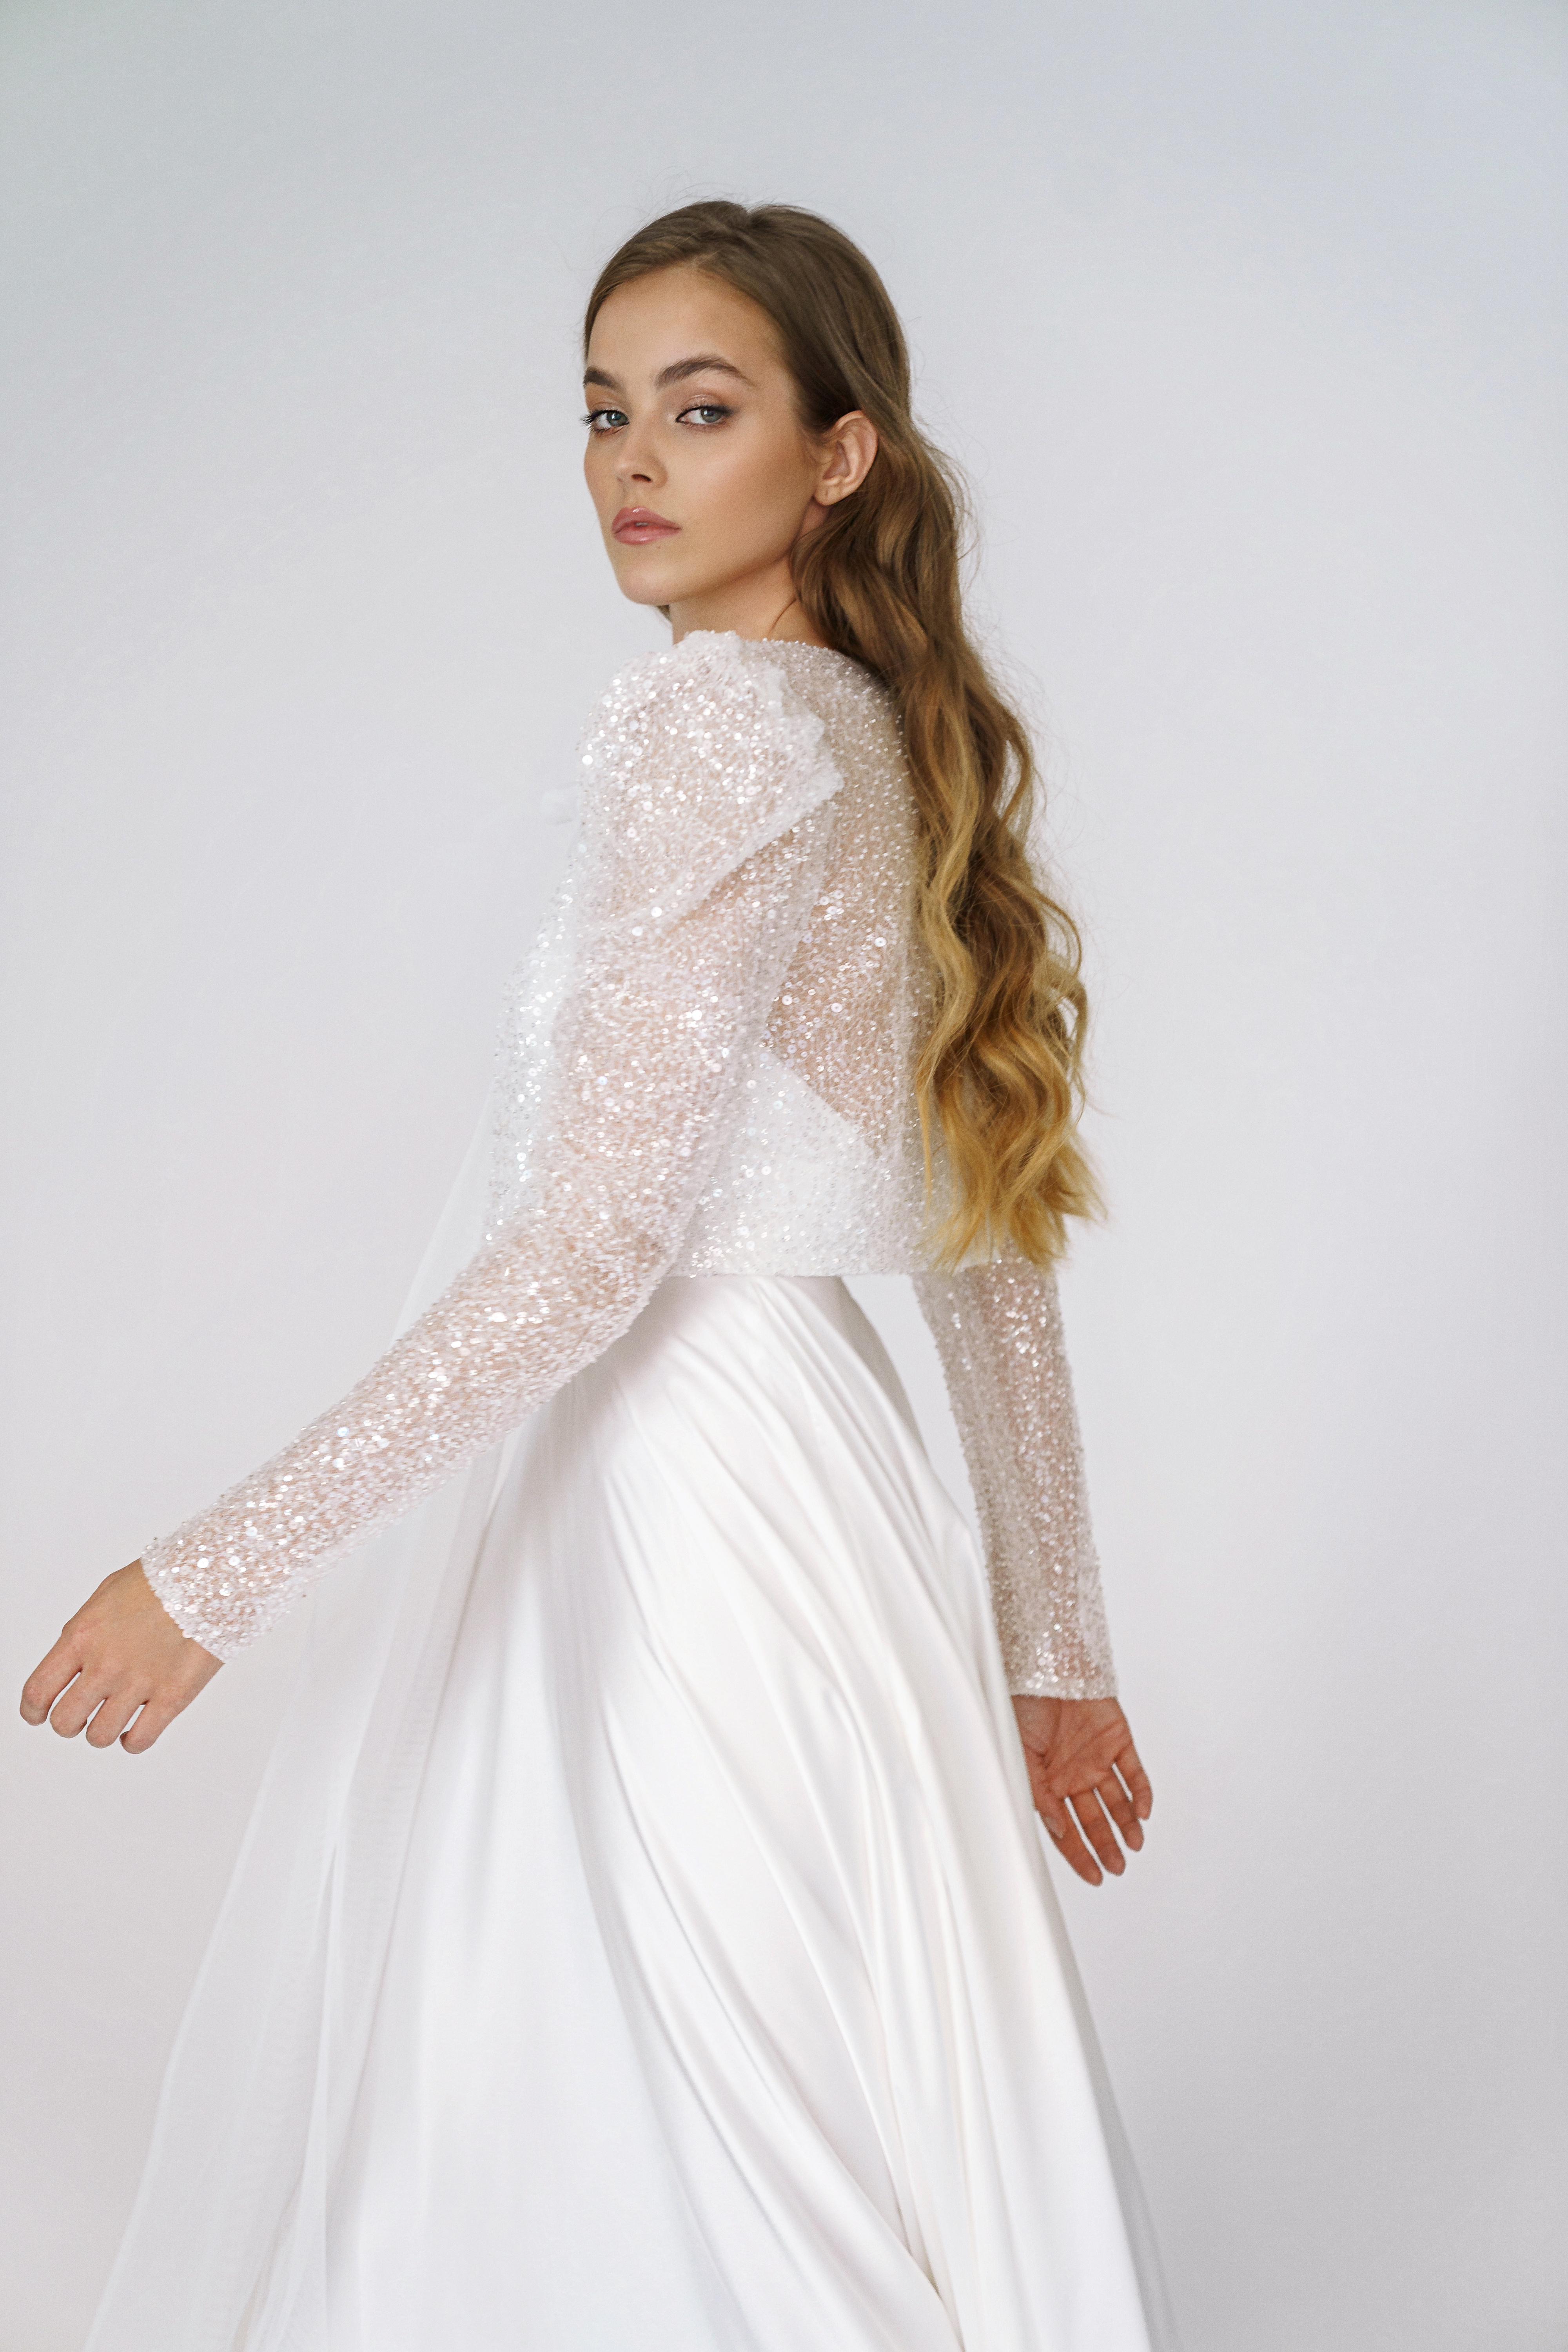 Свадебное платье «Онити» Марта — купить в Воронеже платье Онити из коллекции 2021 года